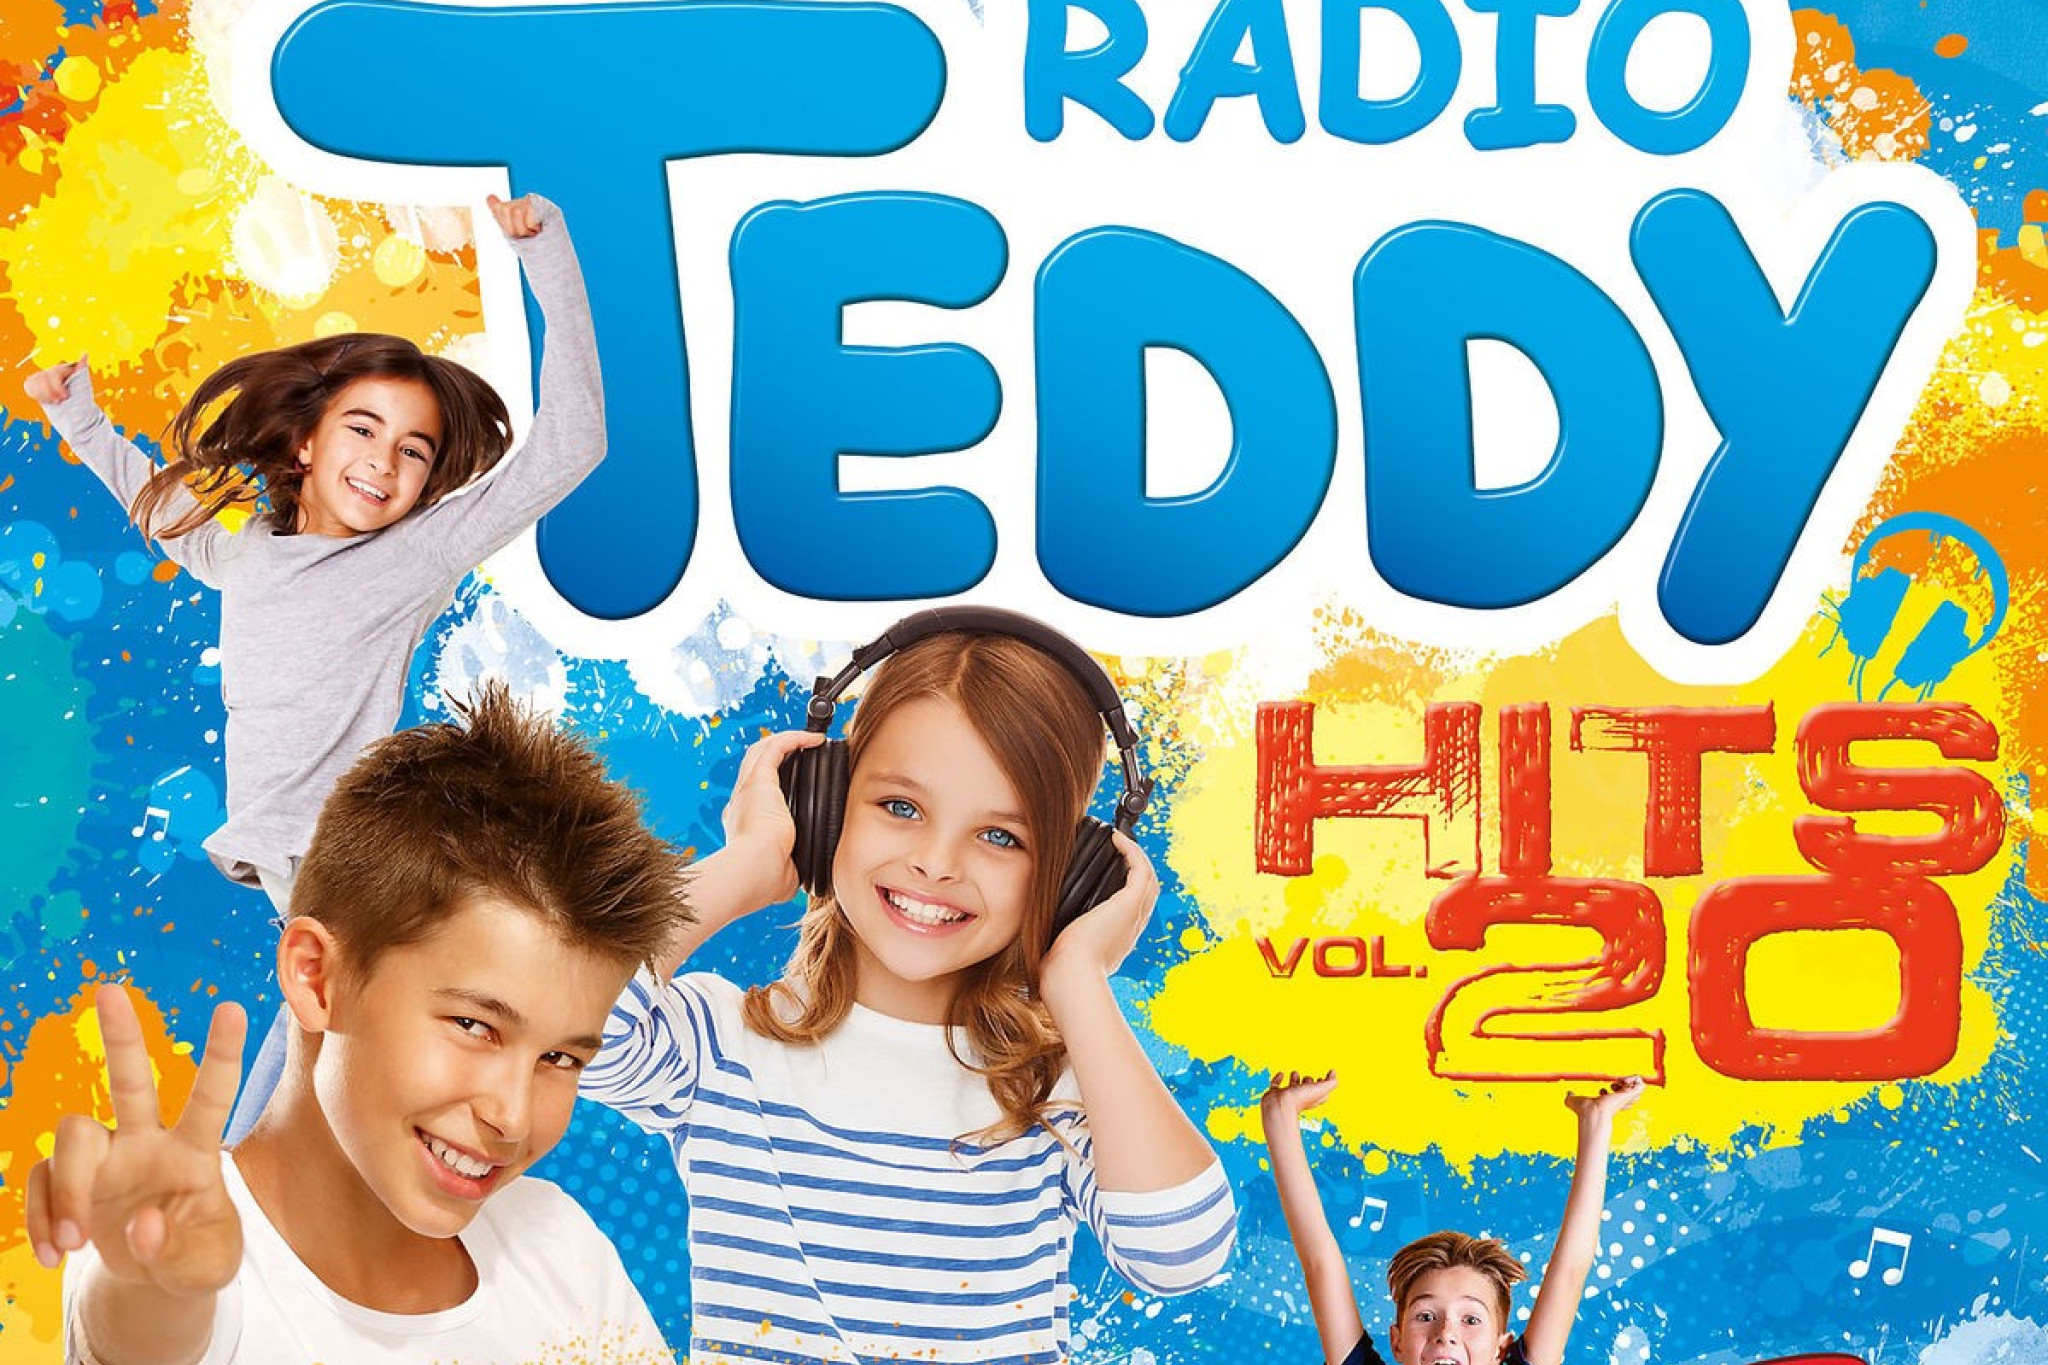 Die neue Hit-Sammlung von Radio TEDDY ist da